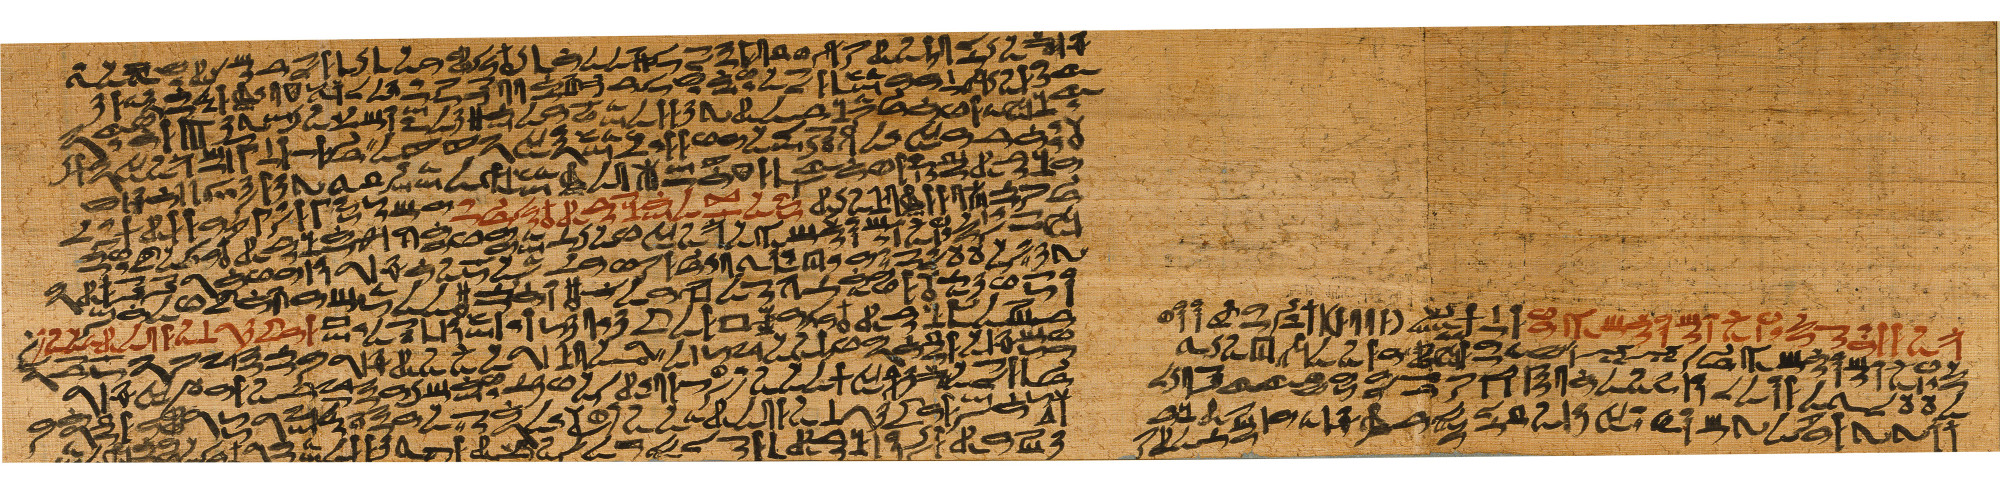 Le papyrus Prisse